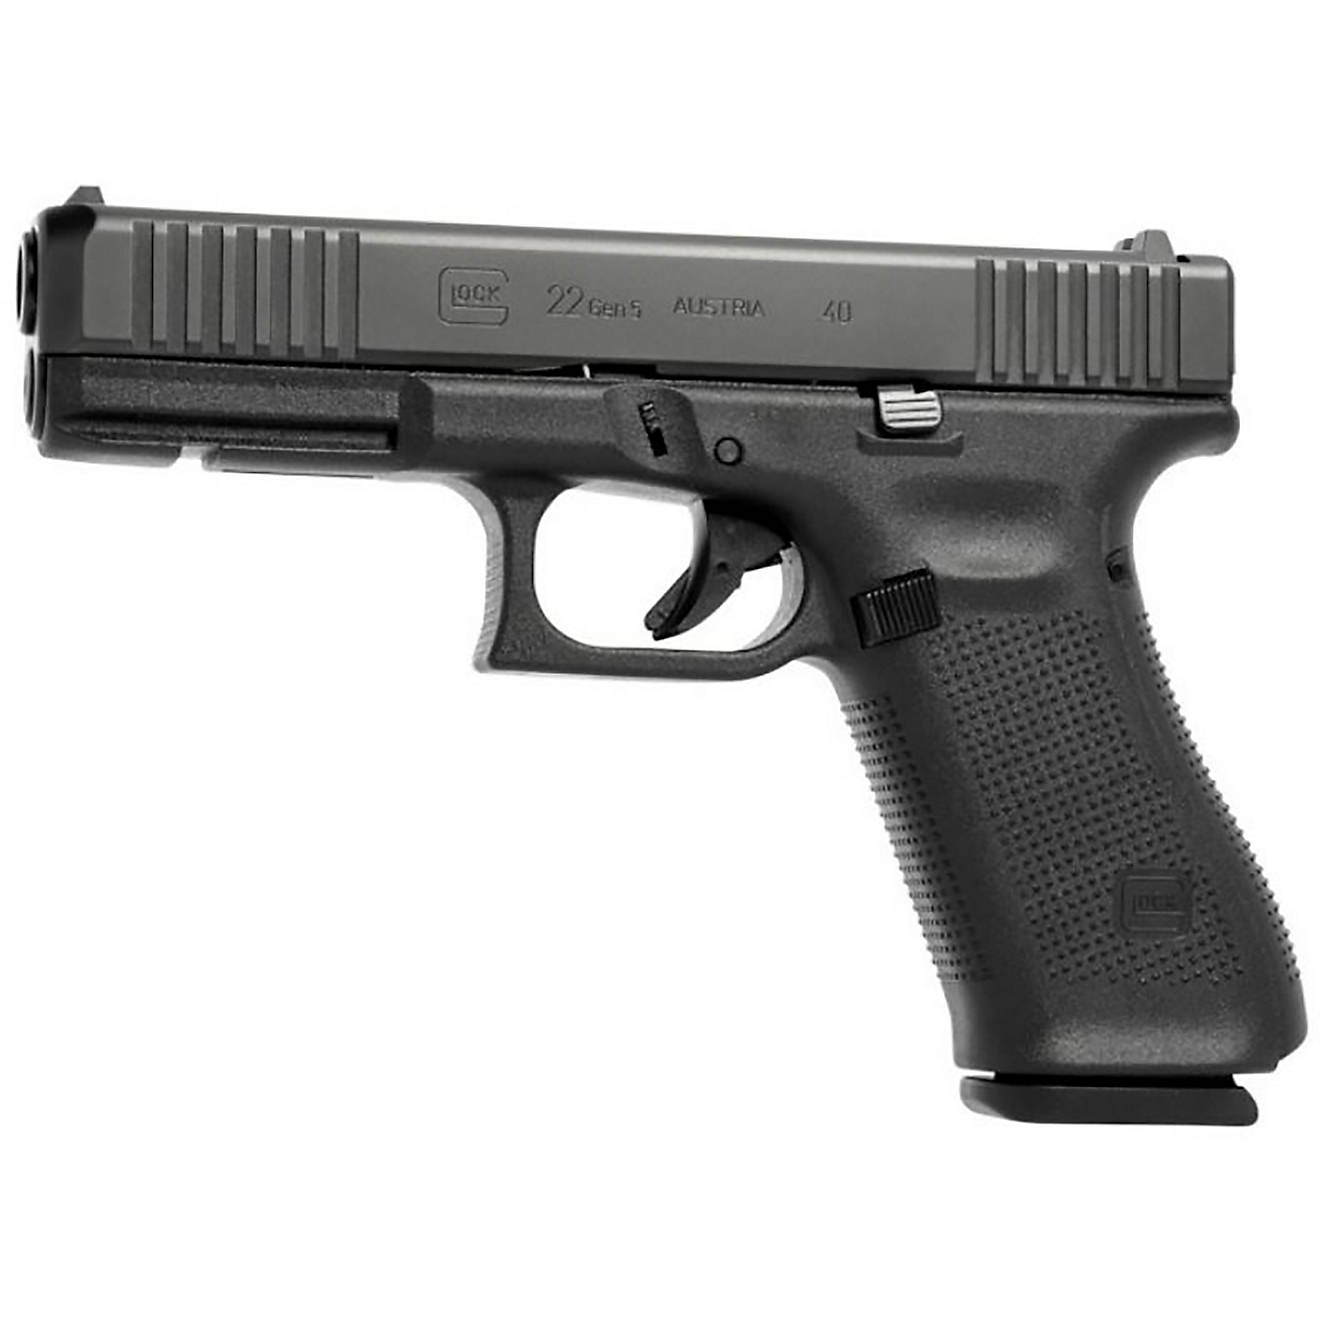 11 Top Striker-Fired Pistols law enforcement Glock 22 Gen4